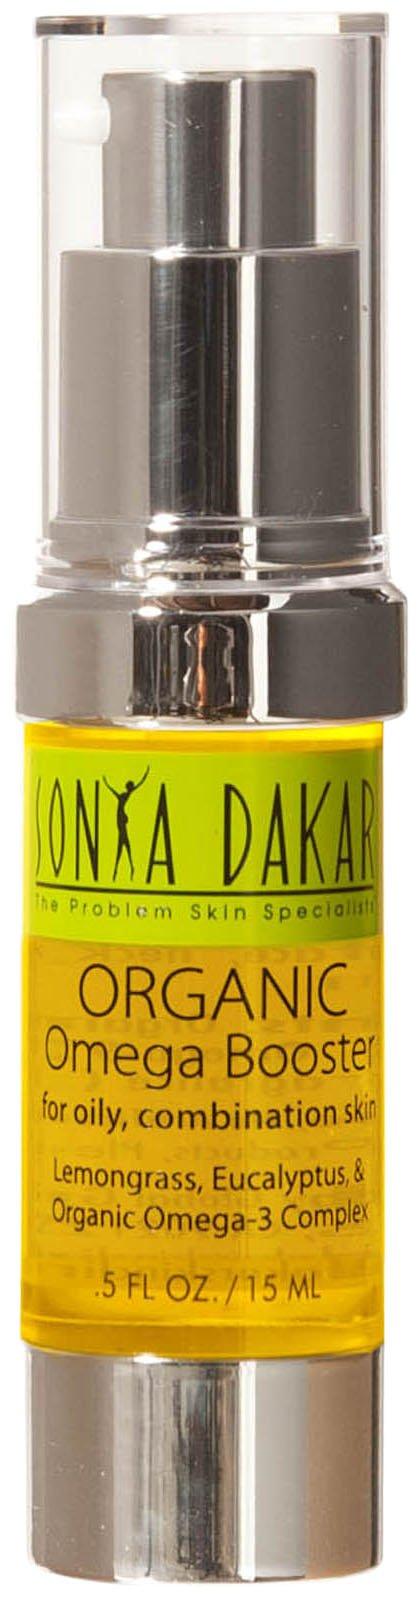 Sonya Dakar Nutrasphere Organic Omega Booster For Oily & Combination Skin